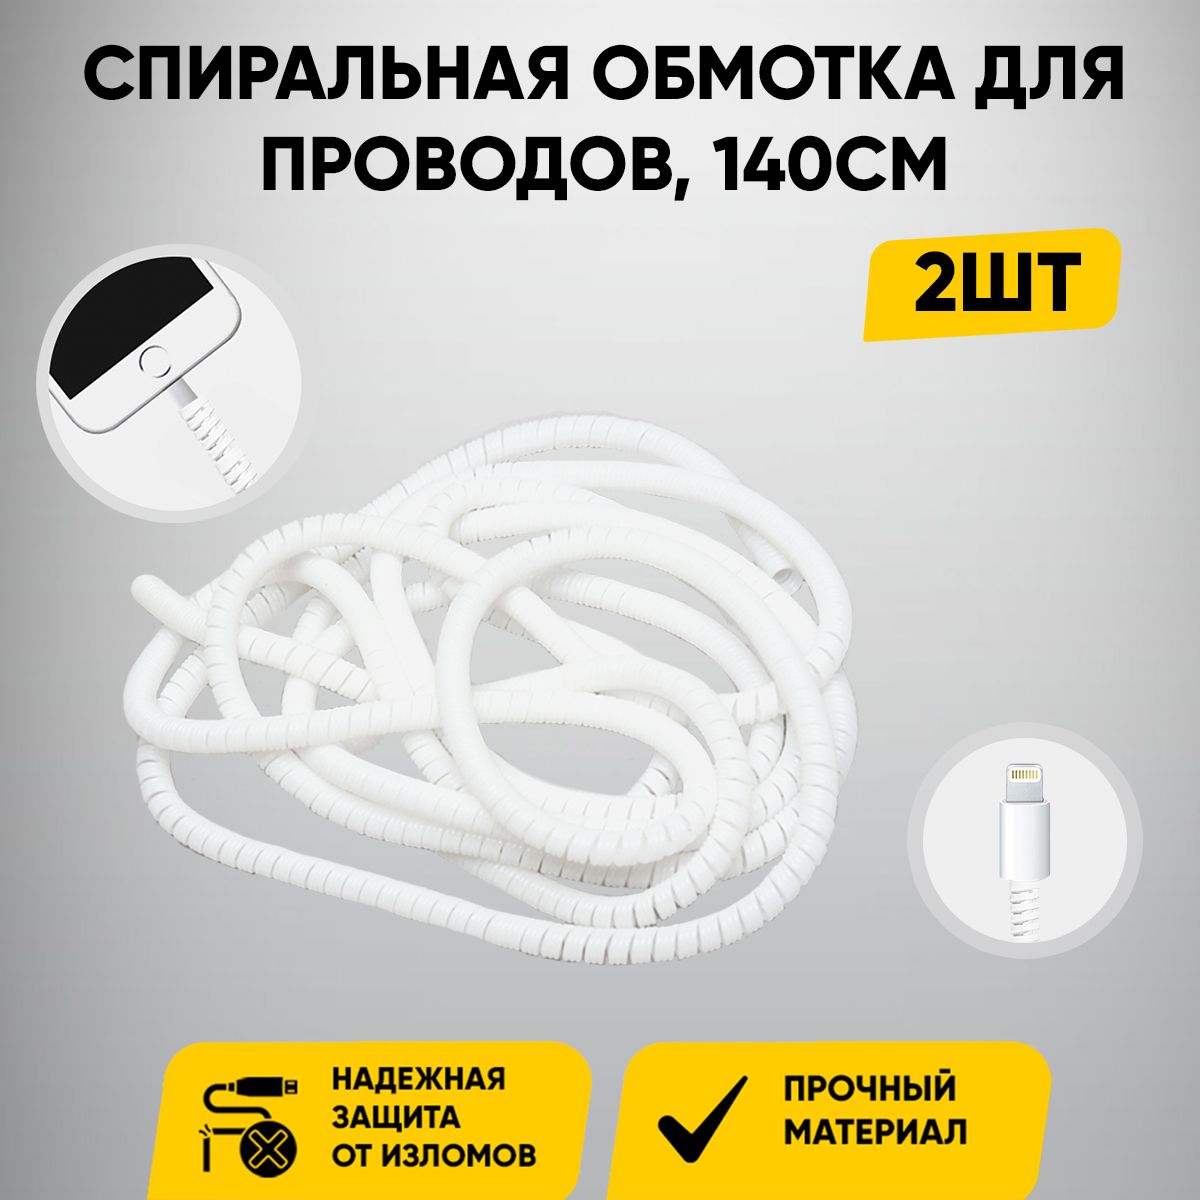 Защитакабелядлинная/обмоткадлякабеля(провода)USBотизлома,перегиба/комплект2шт/цветбелый